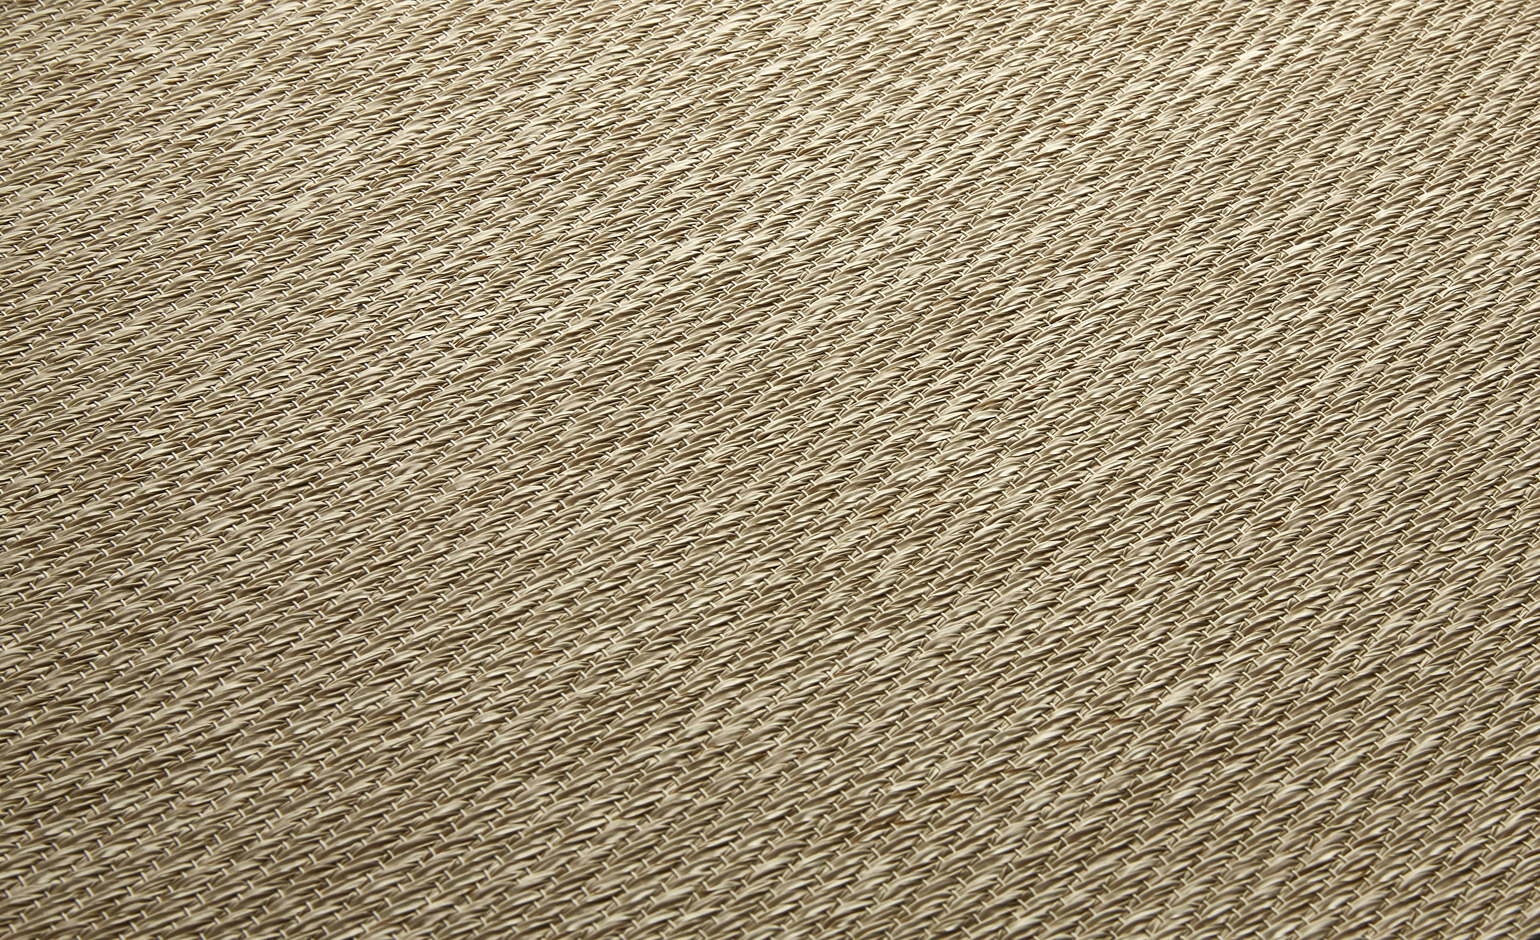 Sol vinyle rouleau NATURELOOK CREME, Textile fibre tissée, crème, rouleau 2.00 m